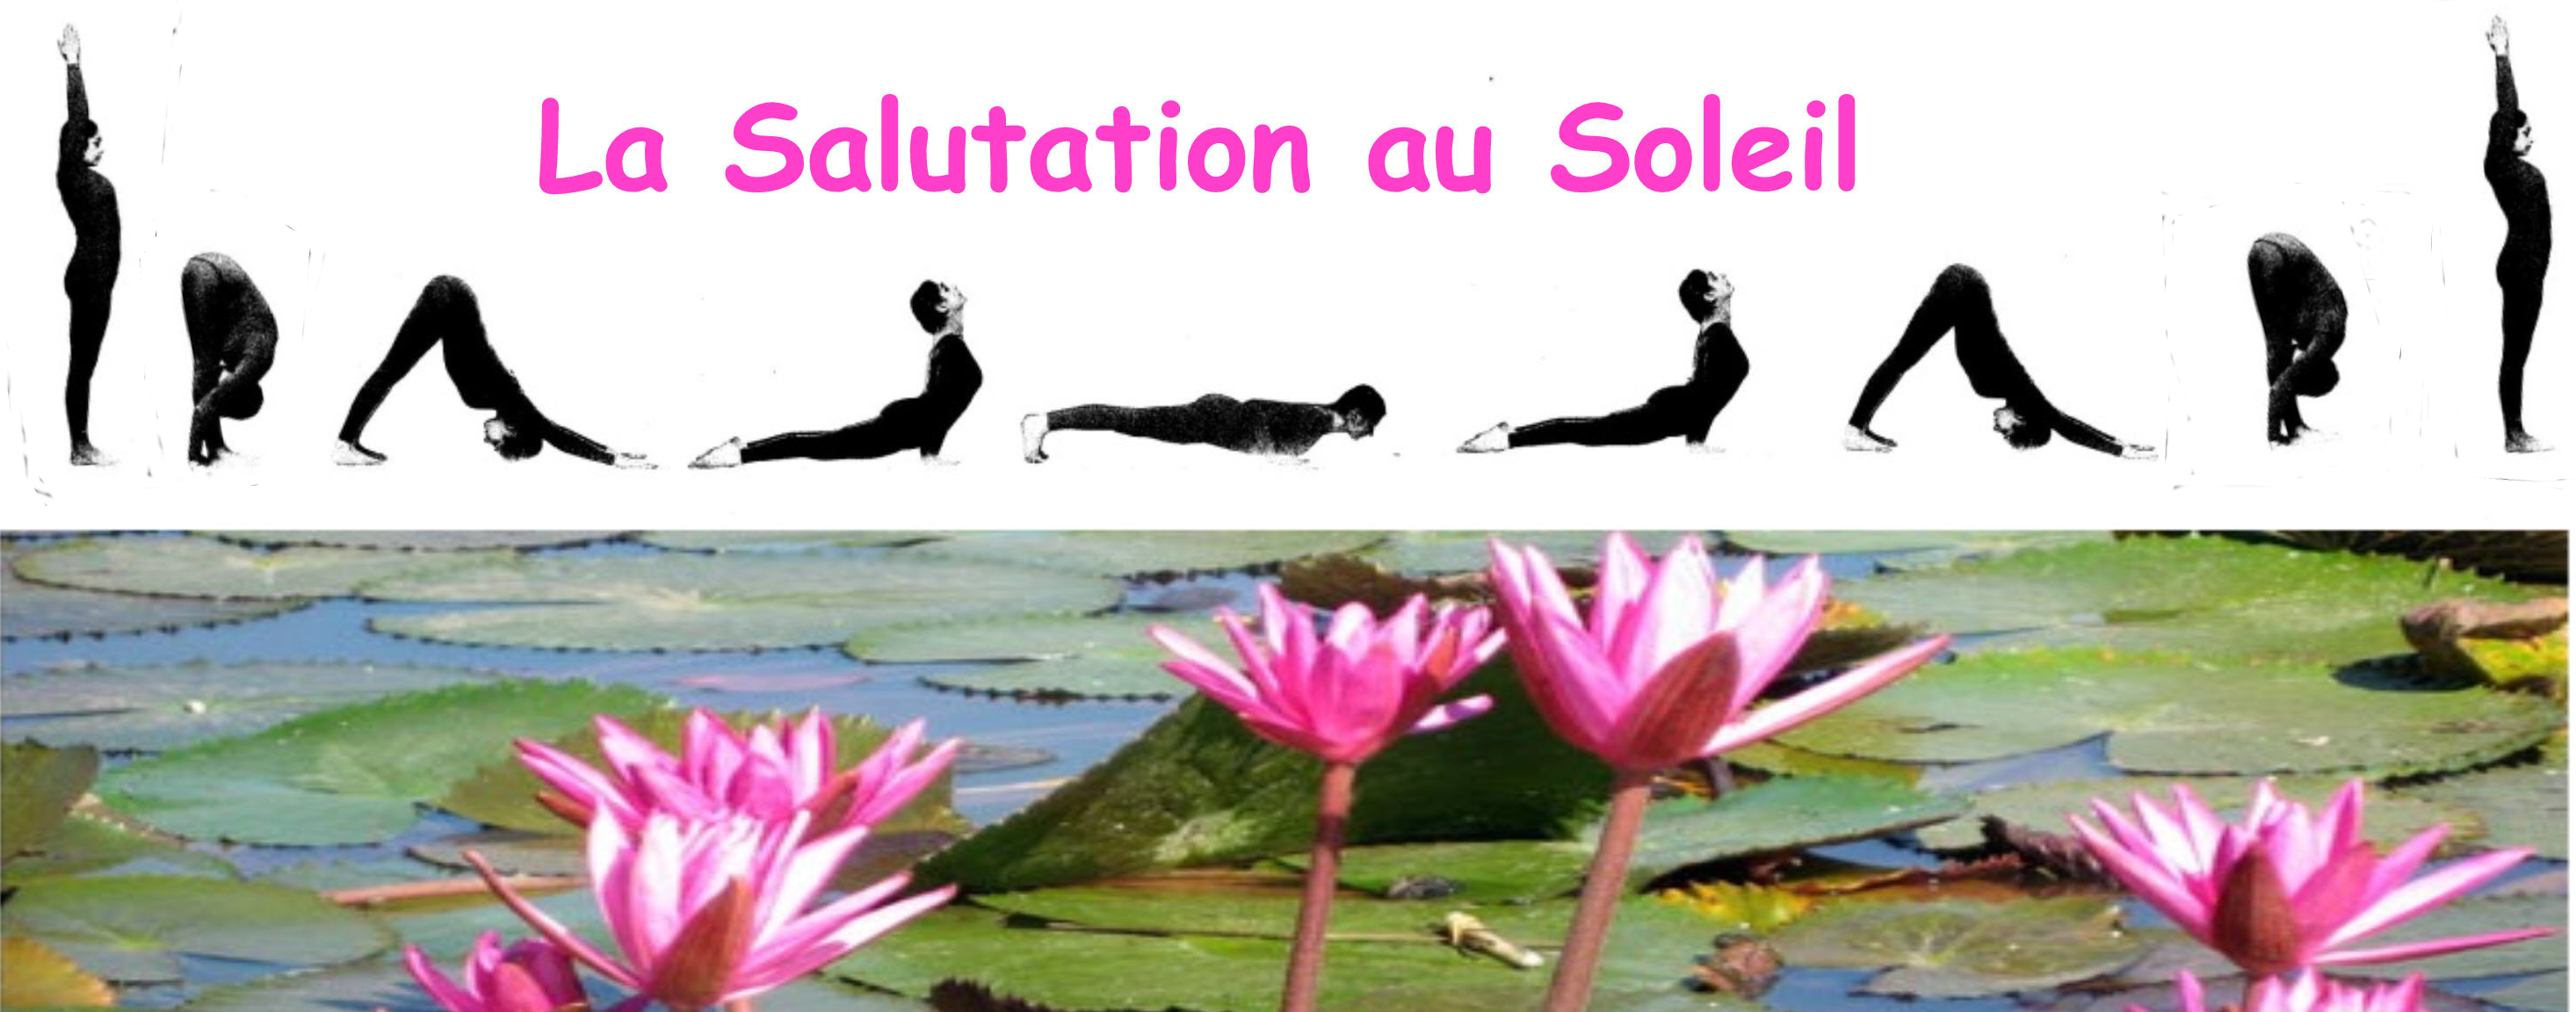 la salutation au soleil:enchainement de postures yoga